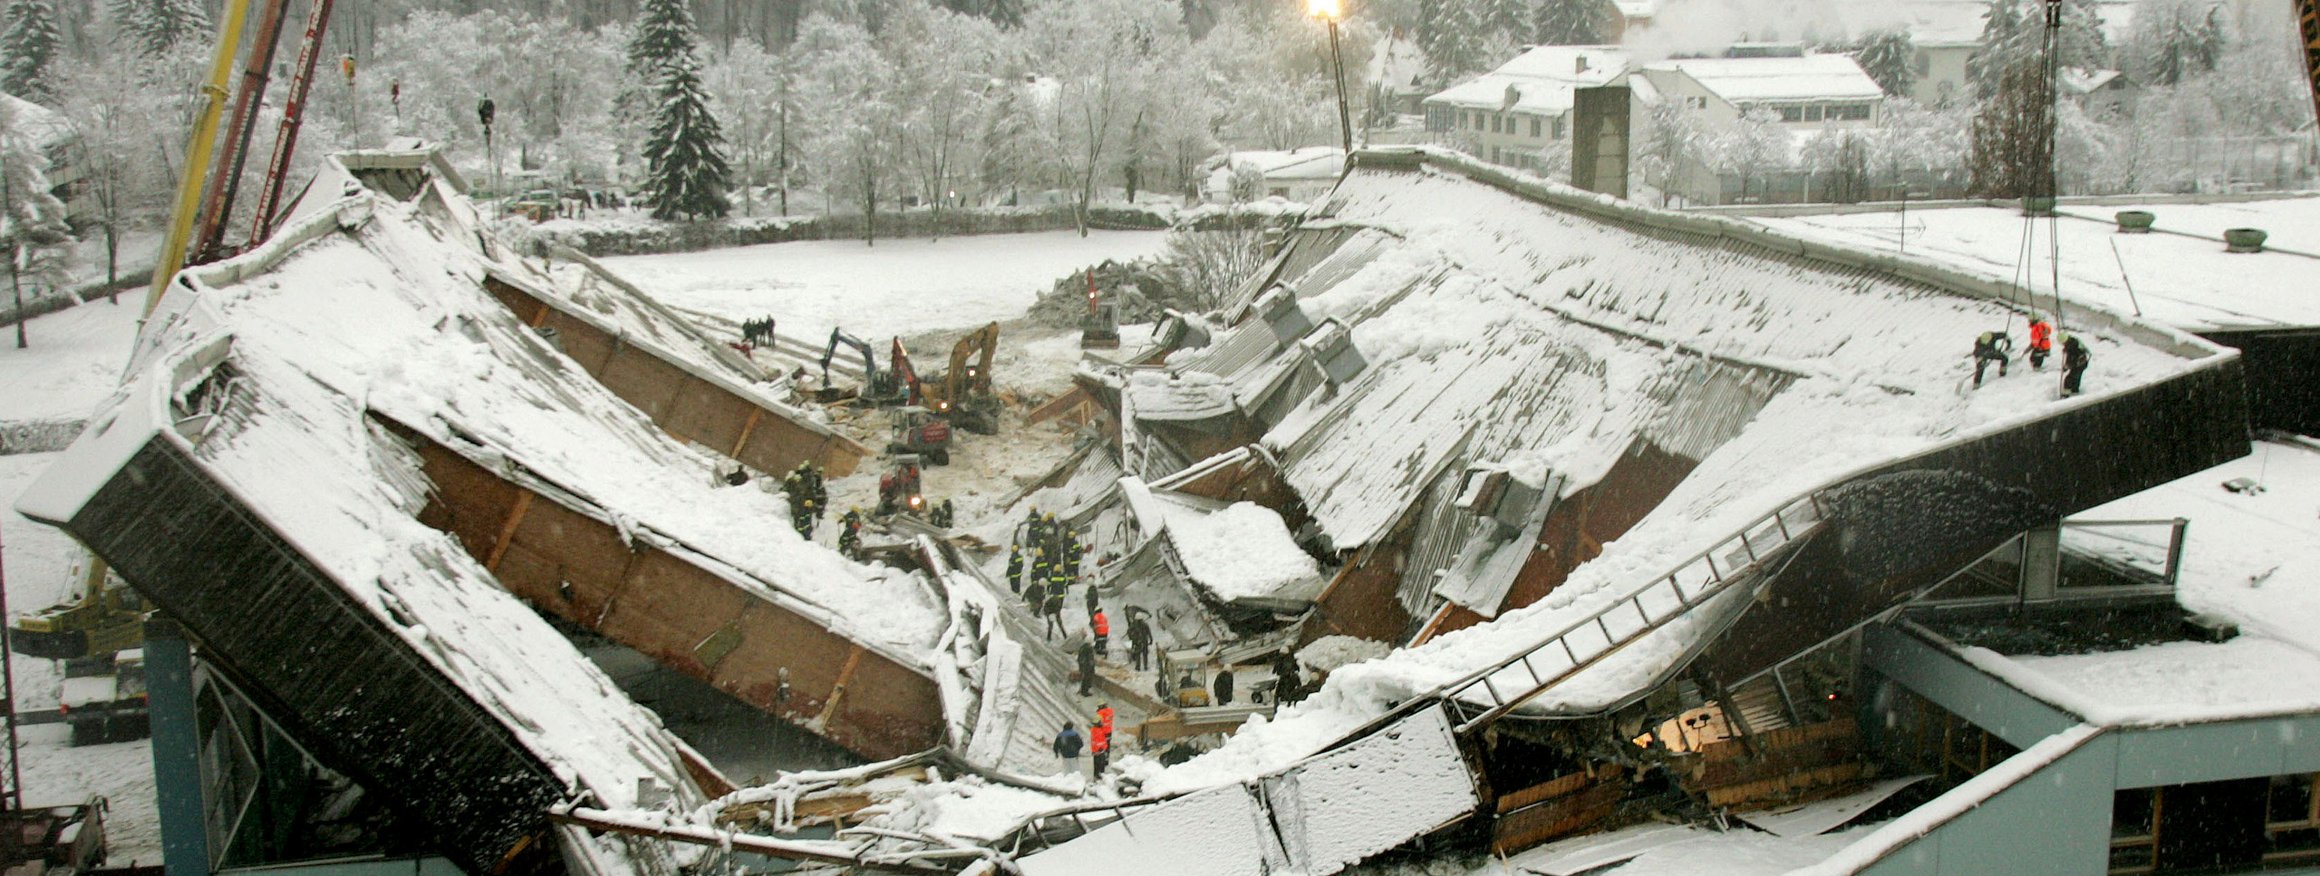 Rettungskräfte sind an der eingestürzten Eissporthalle in Bad Reichenhall im Januar 2006